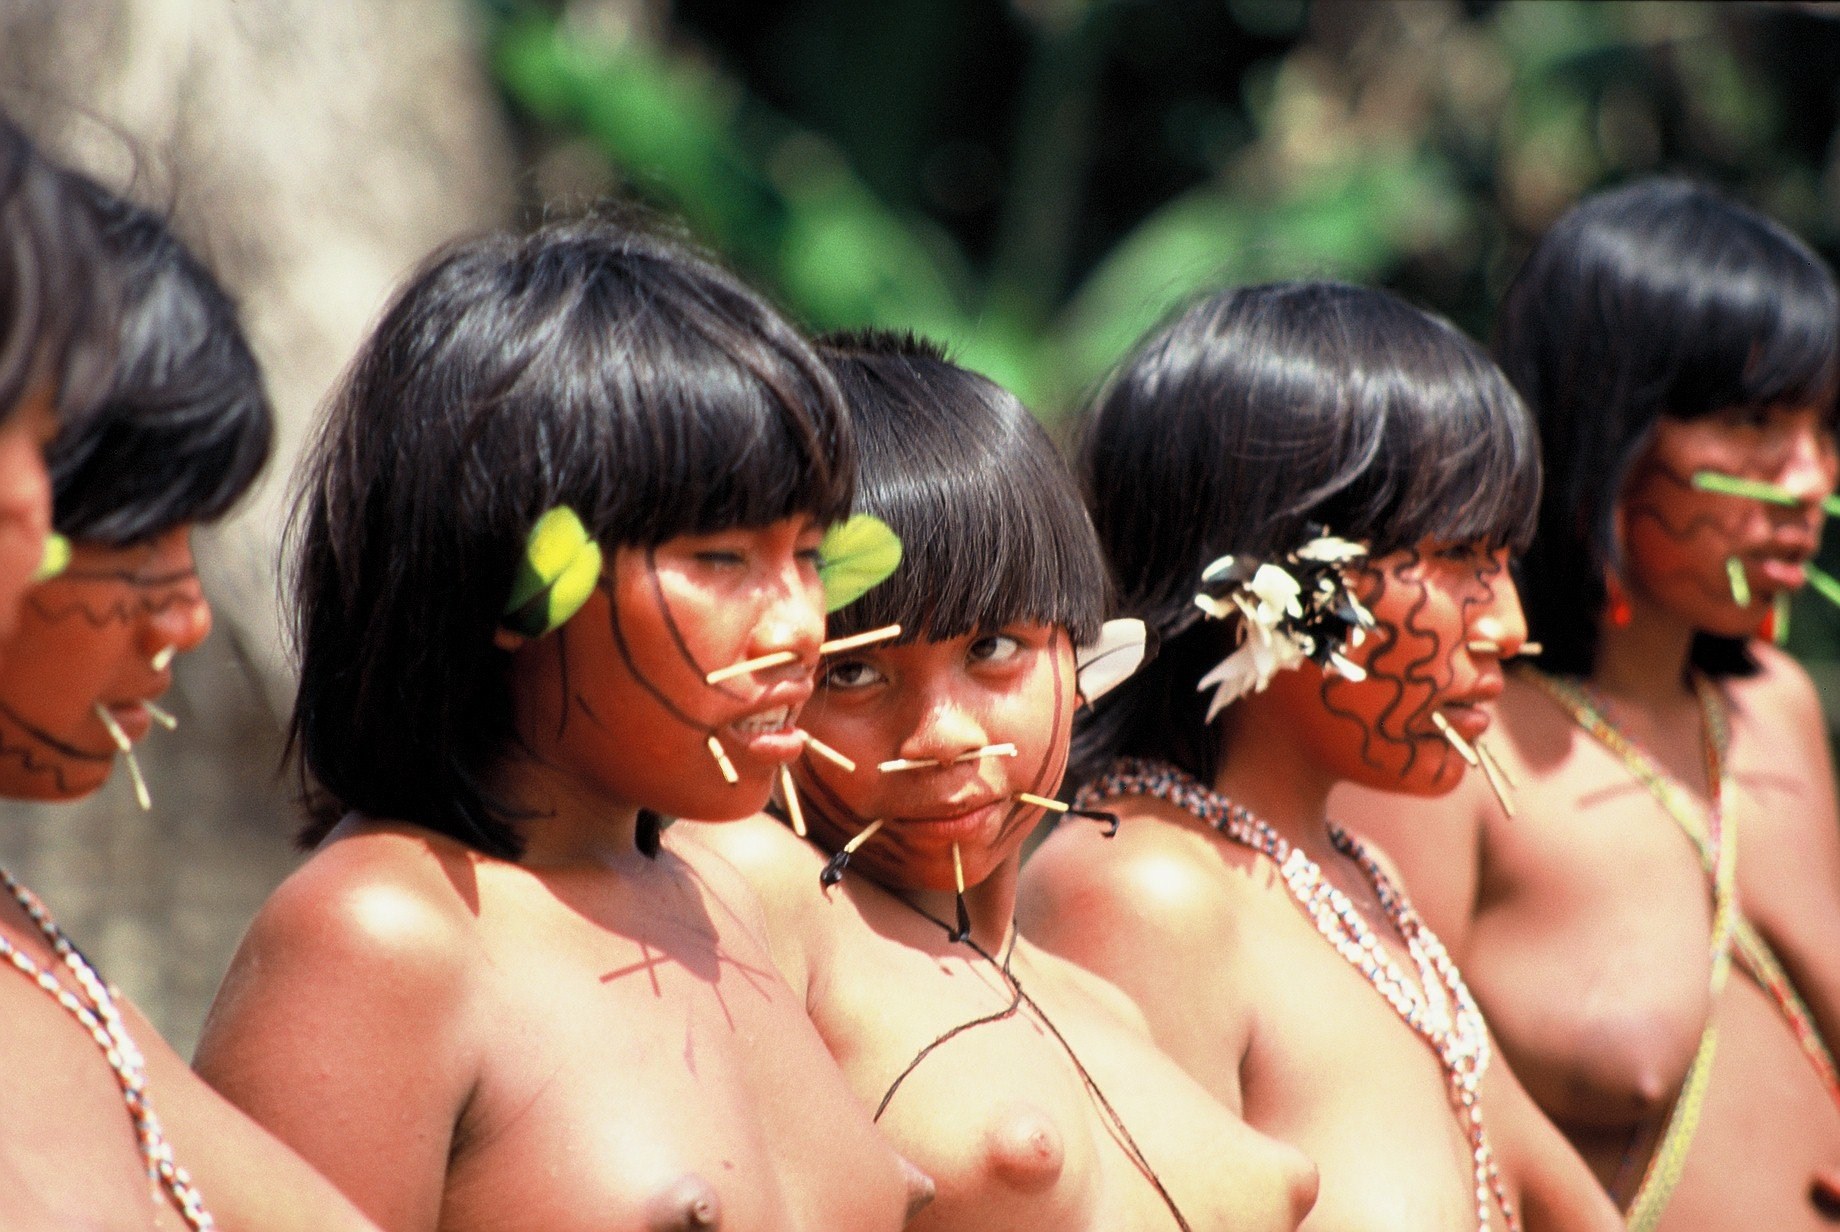 Фото Голых Девушек Бразильских Племен